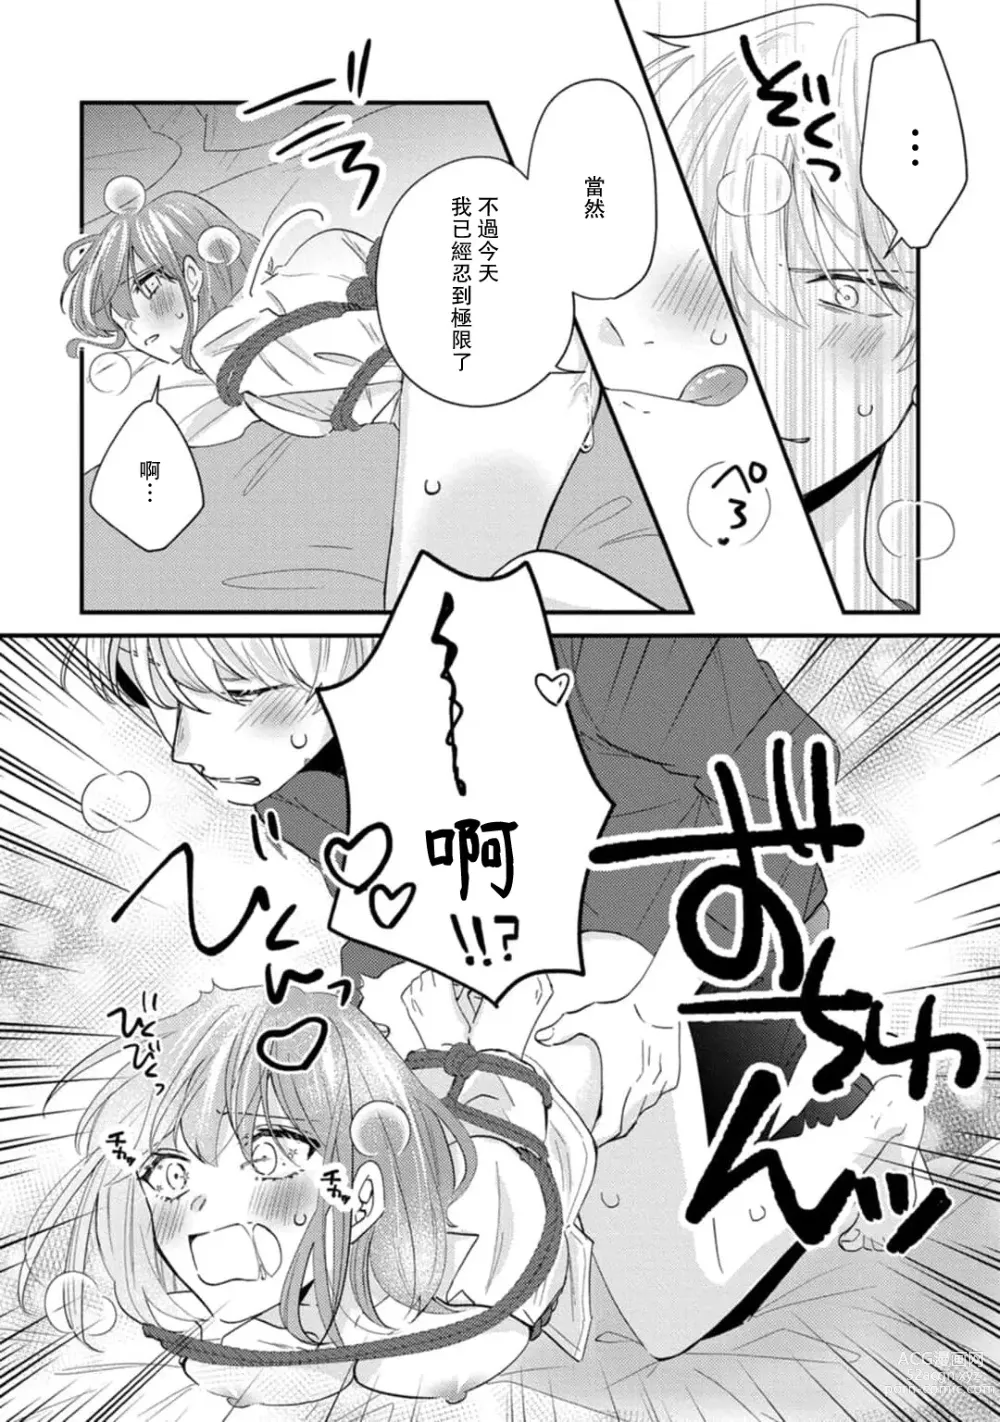 Page 153 of manga 冷酷绅士的性癖只对我泄露 1-5 end